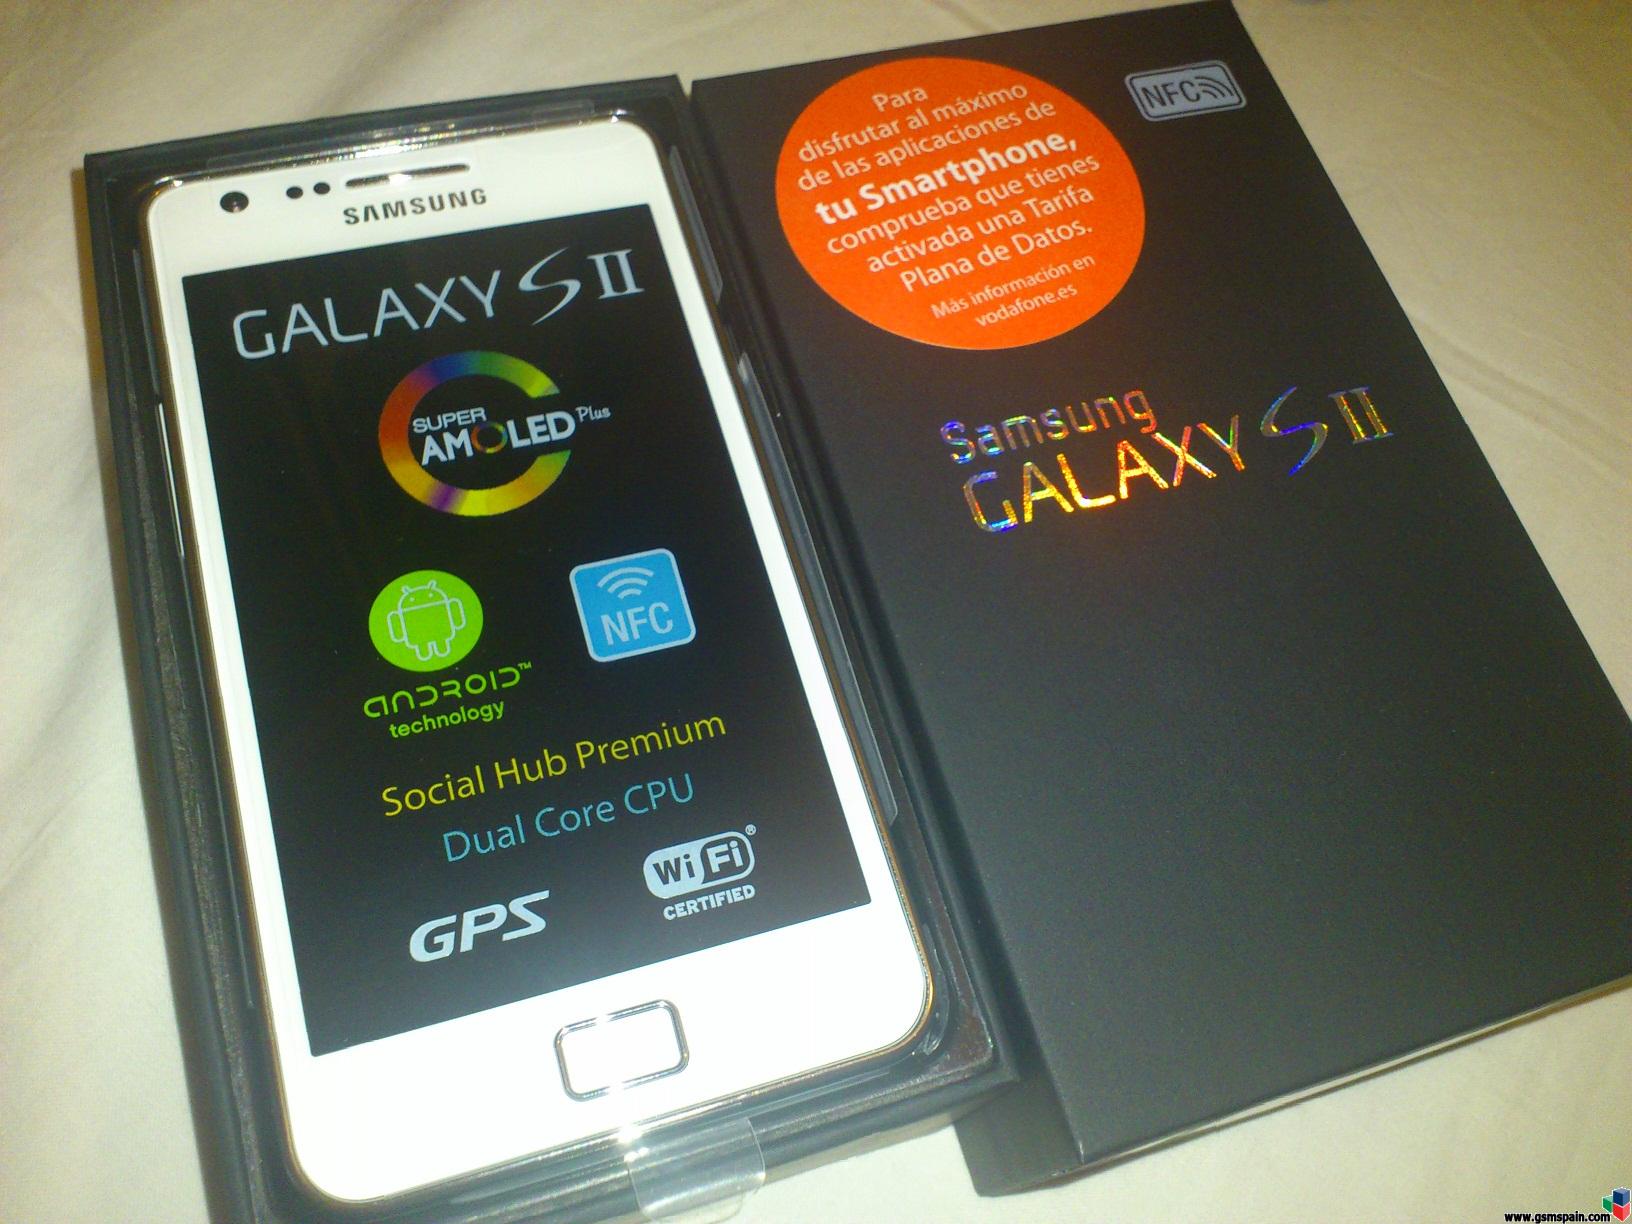 [VENDO] << Samsung Galaxy S2 nuevo a estrenar blanco. Factura. Ultimo!!! >>>